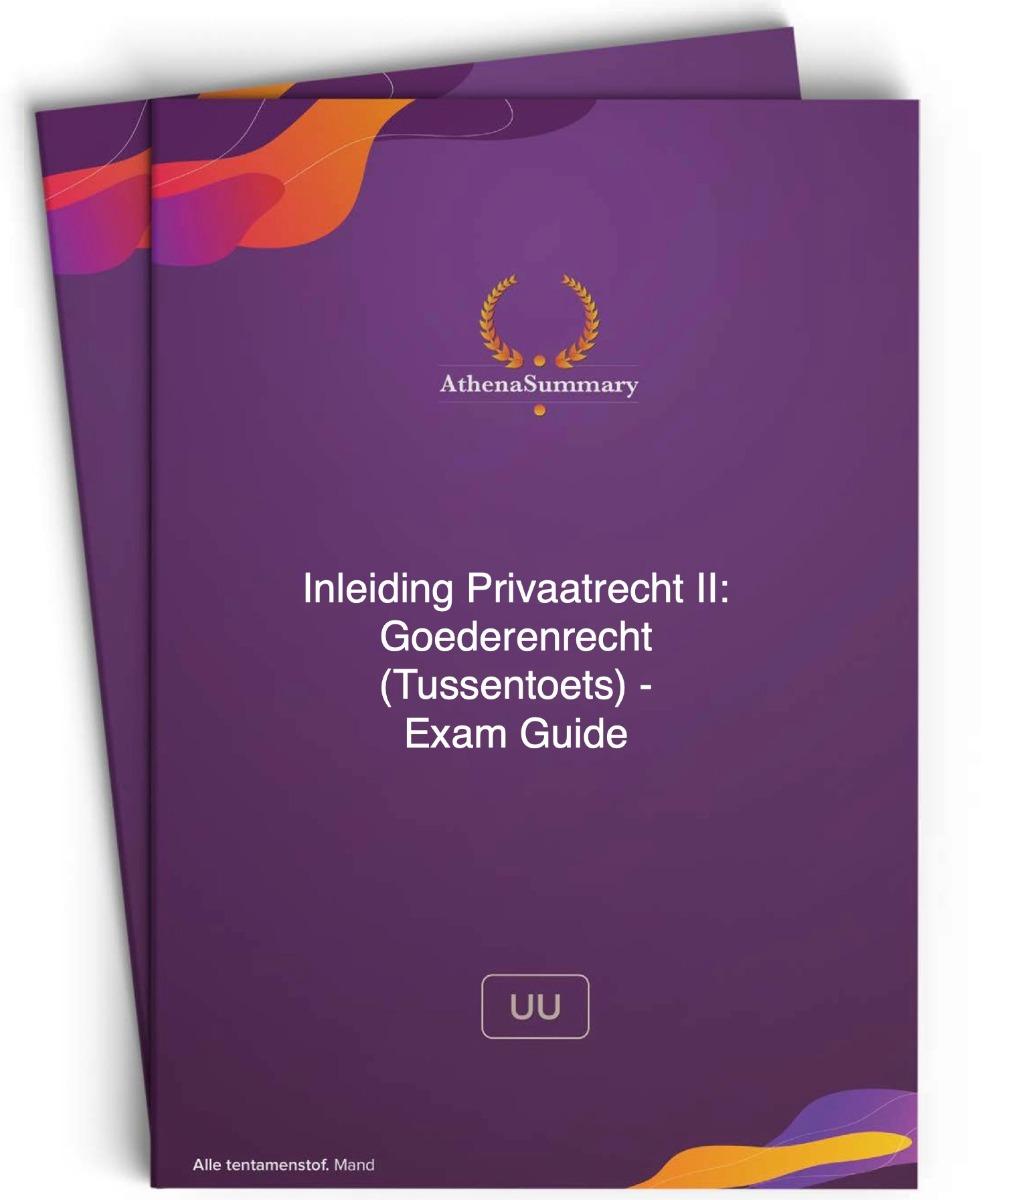 Exam Guide - Inleiding Privaatrecht II: Goederenrecht (Tussentoets)